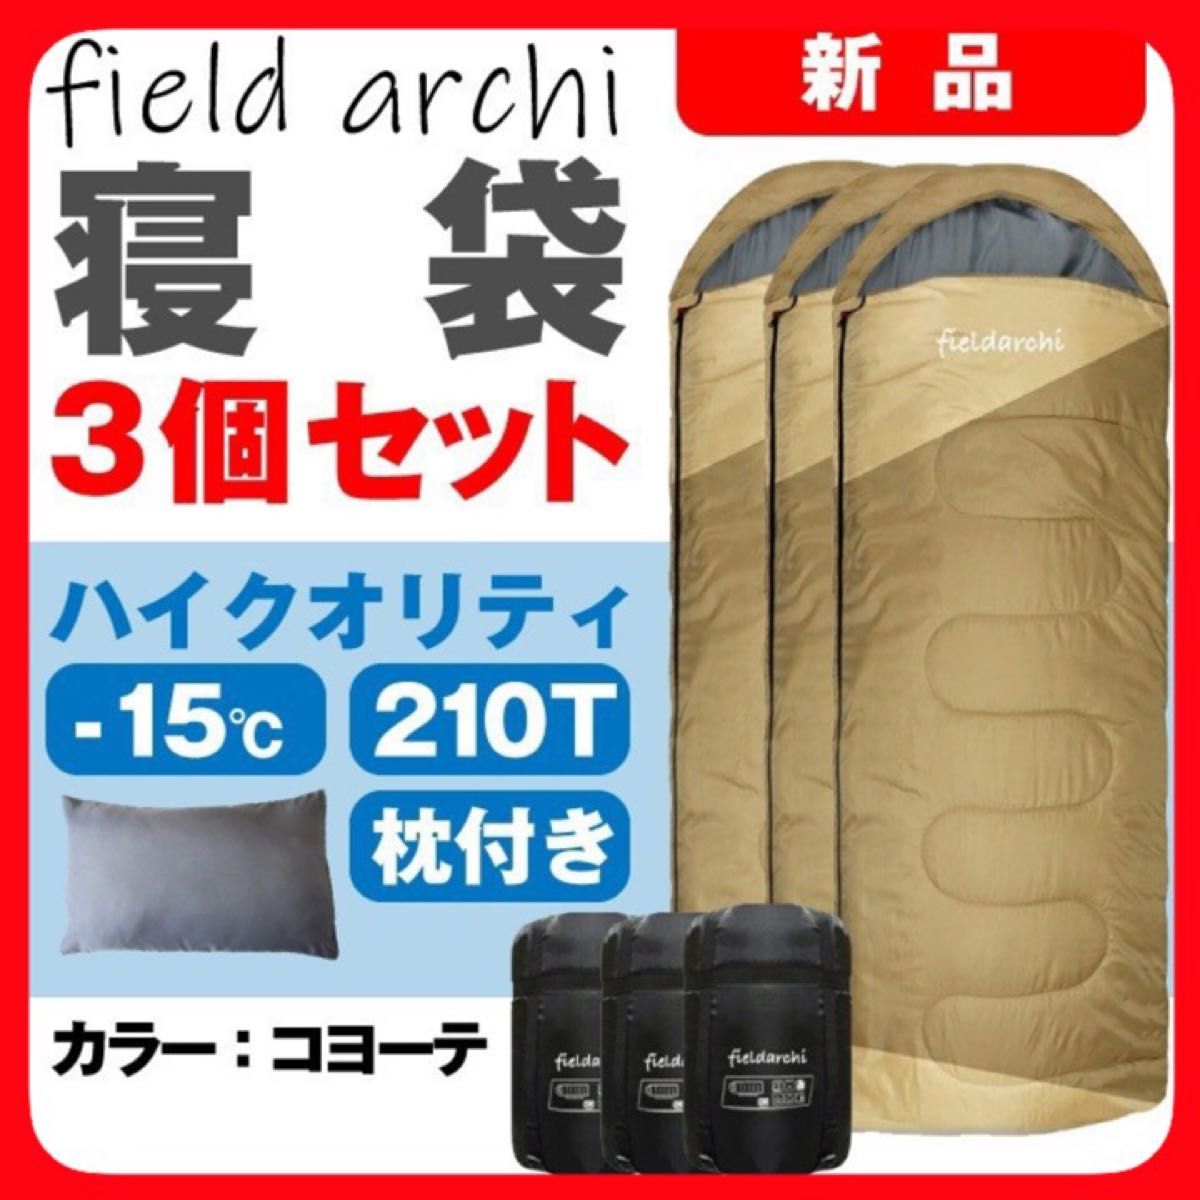 新品 寝袋-15℃ 210T(枕付き) キャンプ 登山 アウトドア用品 コヨーテ 3